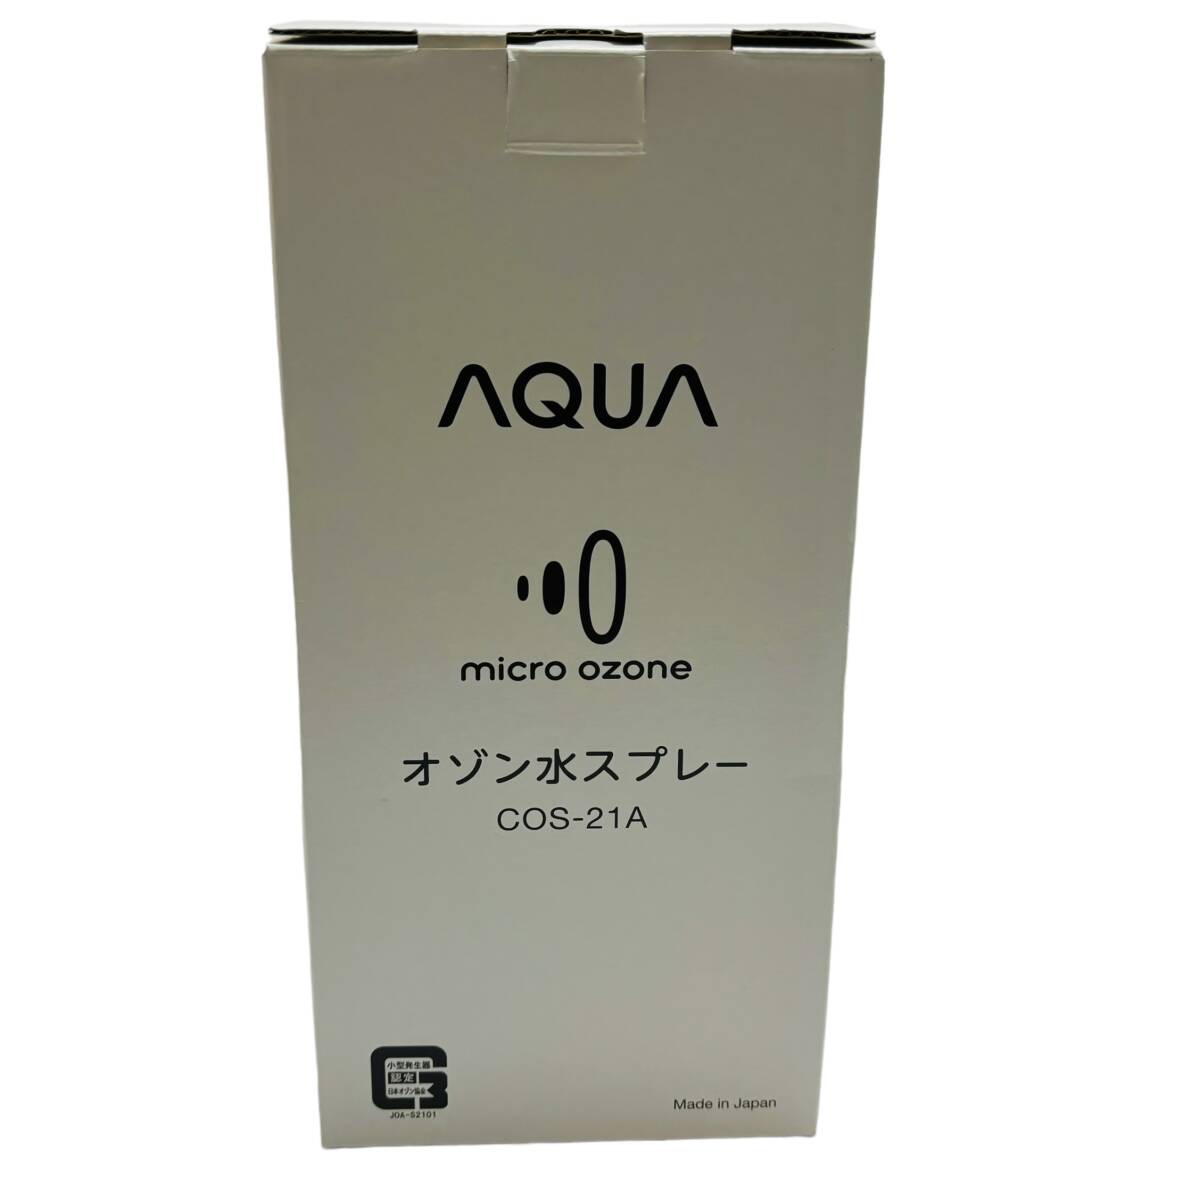 【未使用品】AQUA アクア オゾン水スプレー COS-21A マイクロオゾン 小型発生器 micro ozone